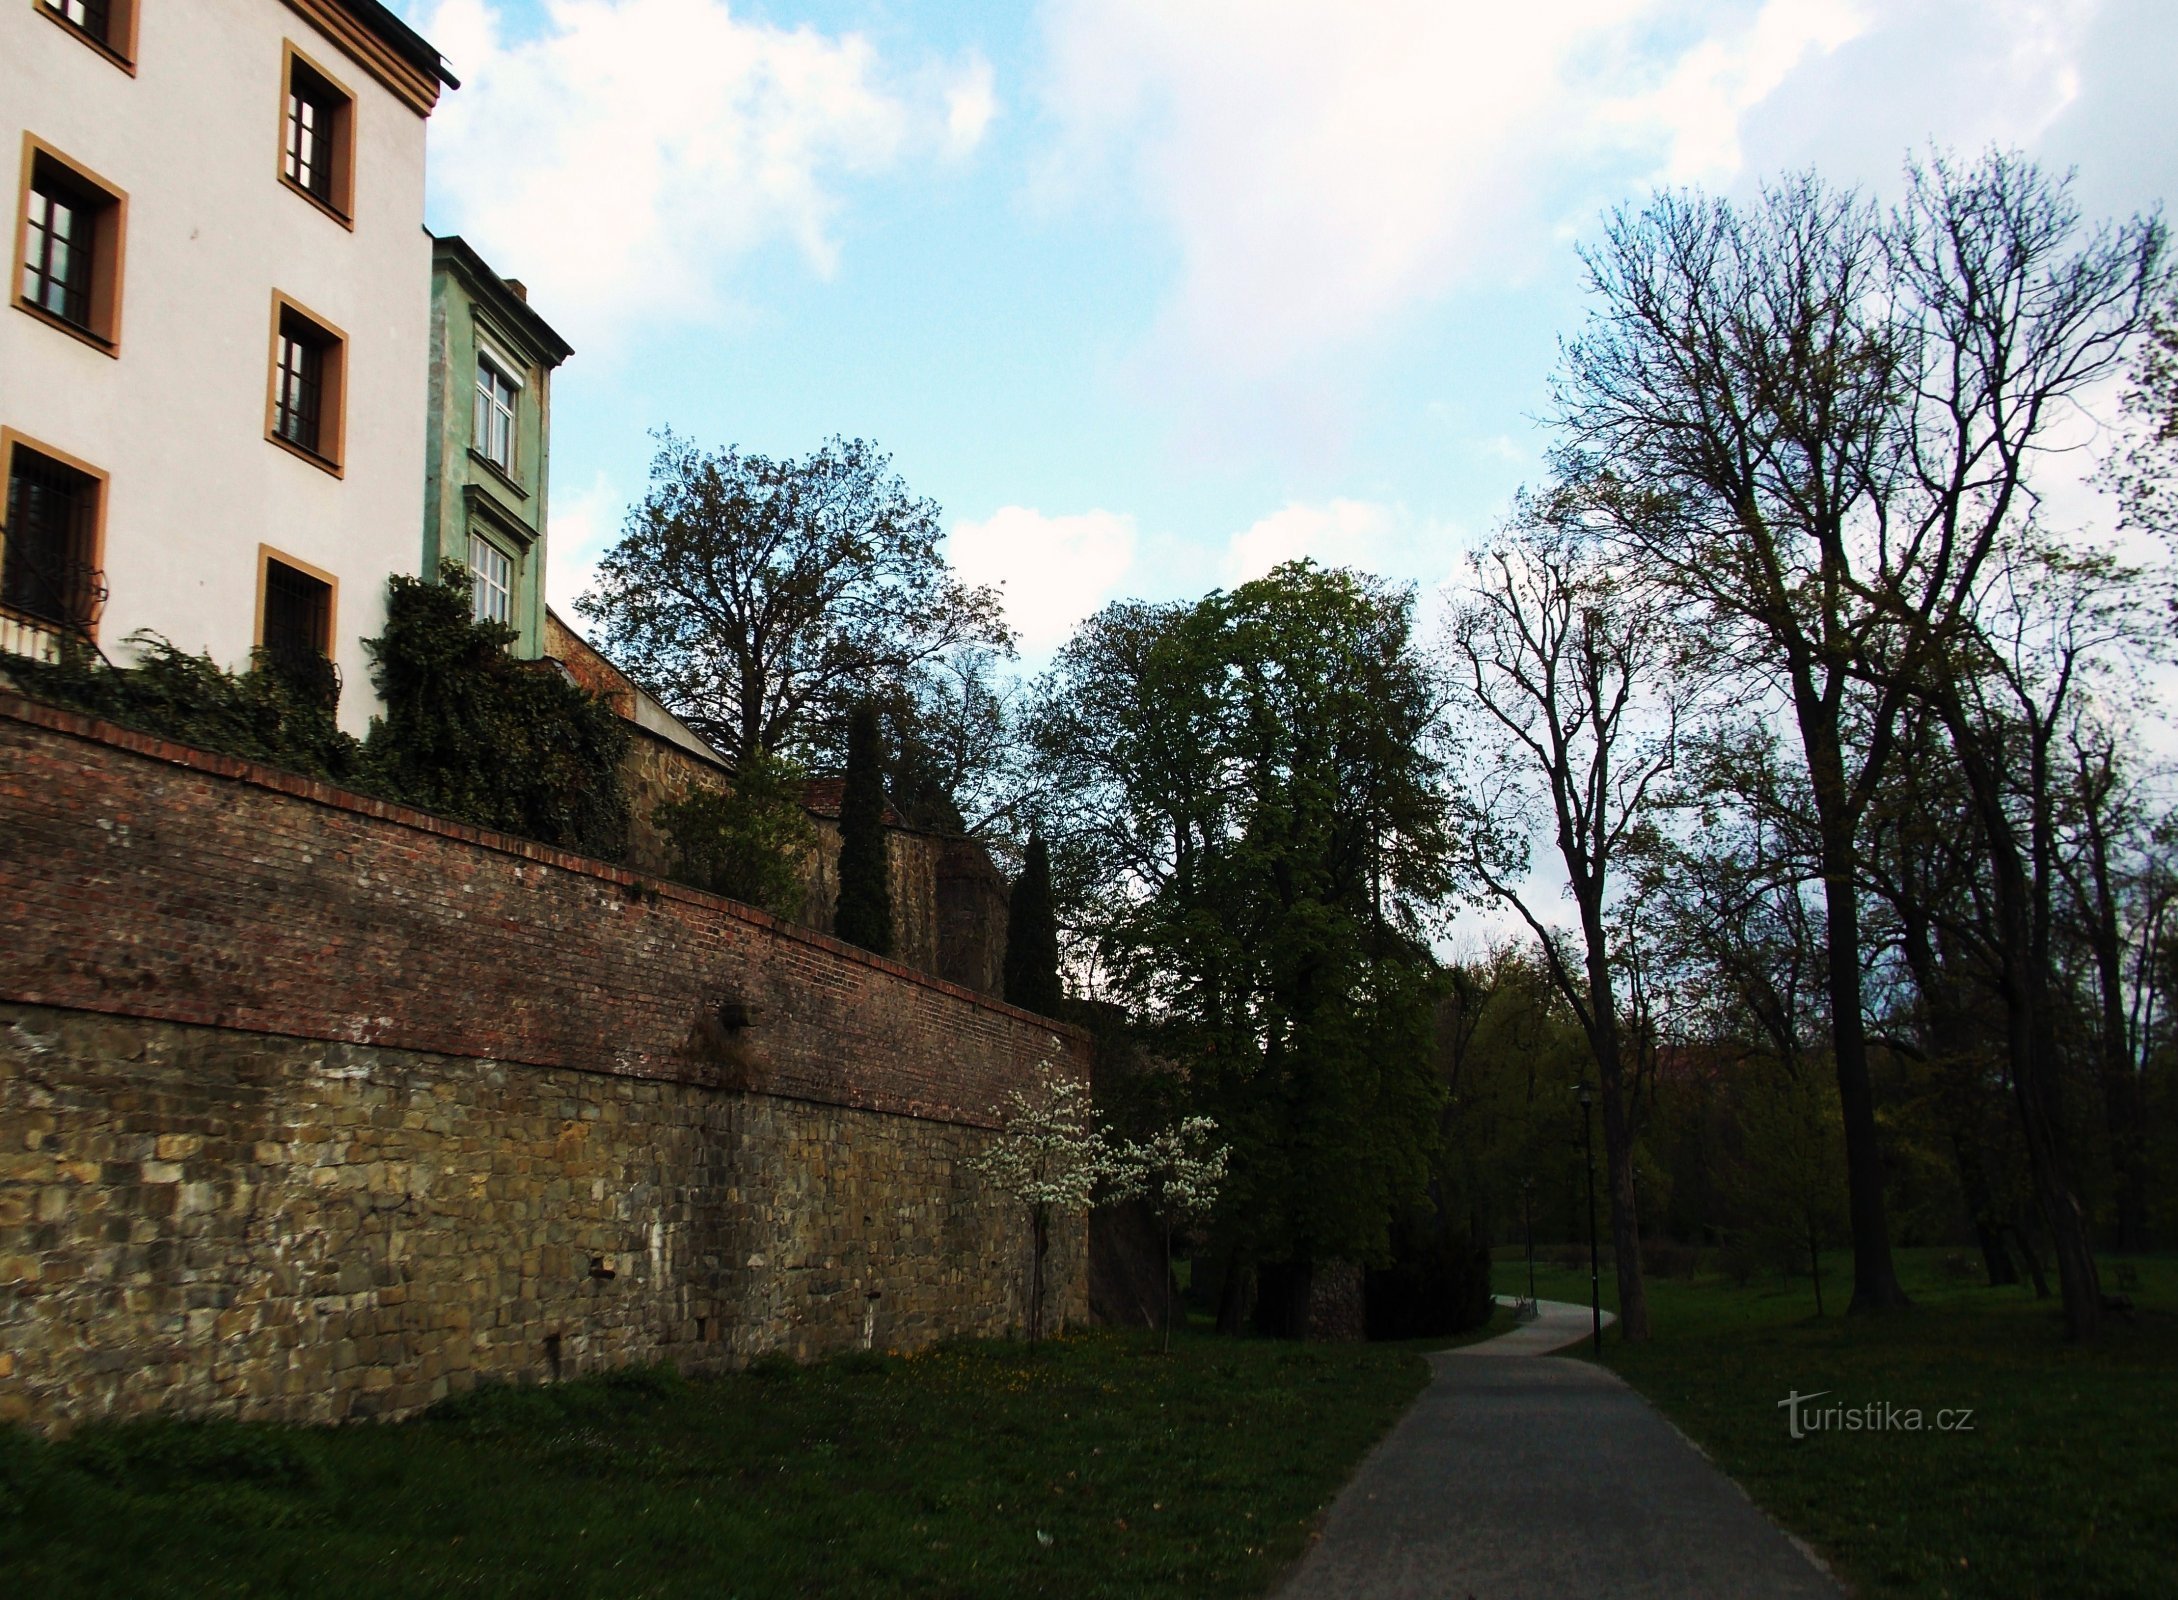 Olomouc, đi bộ qua công viên thành phố - Bezručovy Sady